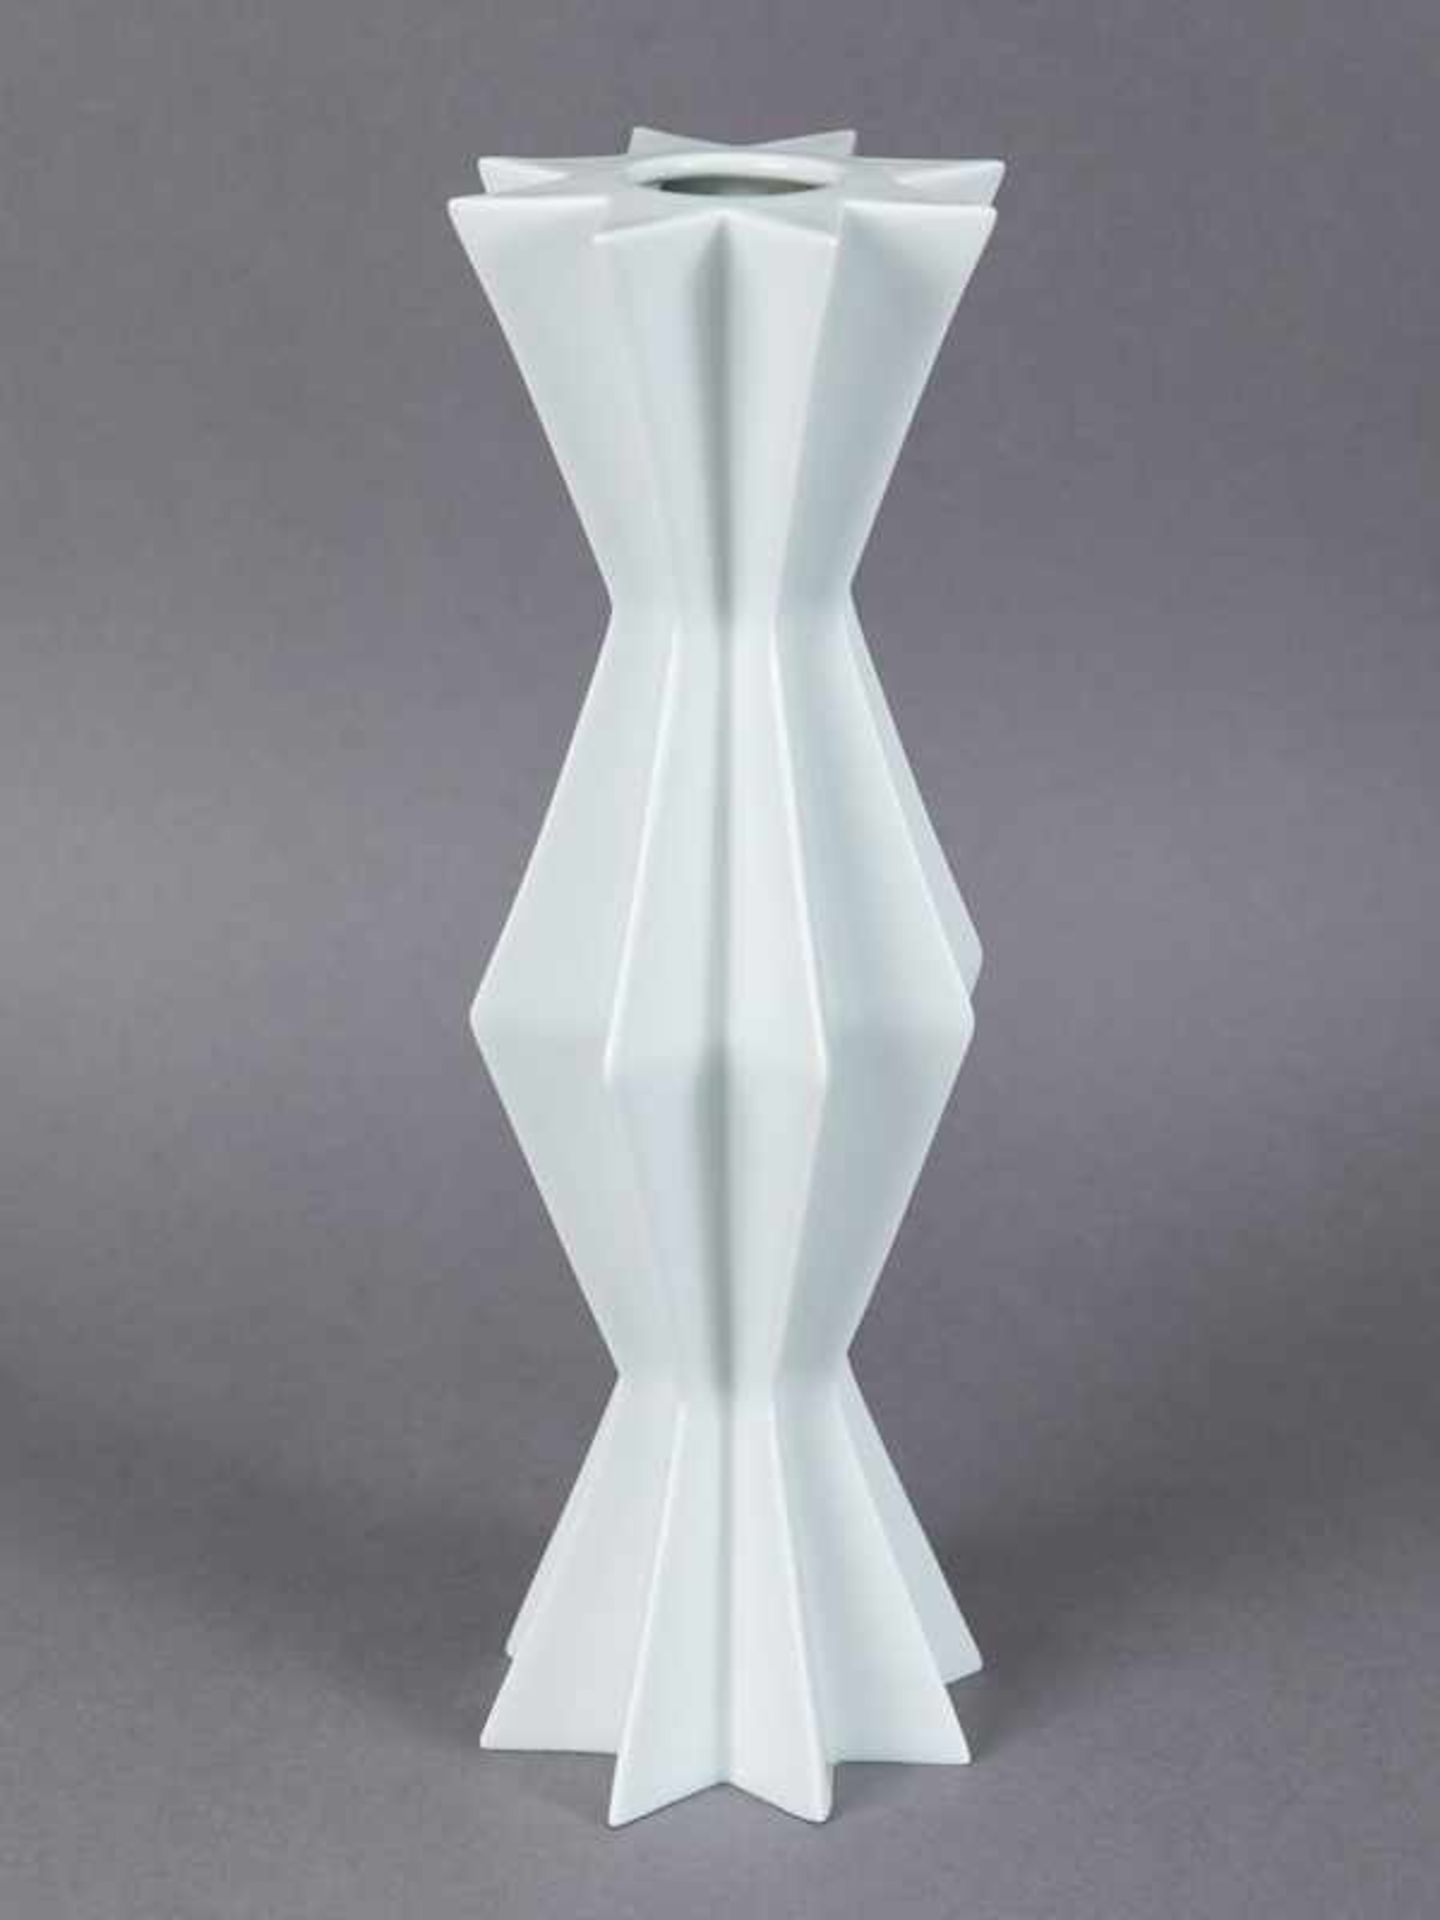 Vase aus der "Star" Kollektion, Entwurf Sieger Design, Fürstenberg, 1990er Jahre. Vase aus der "